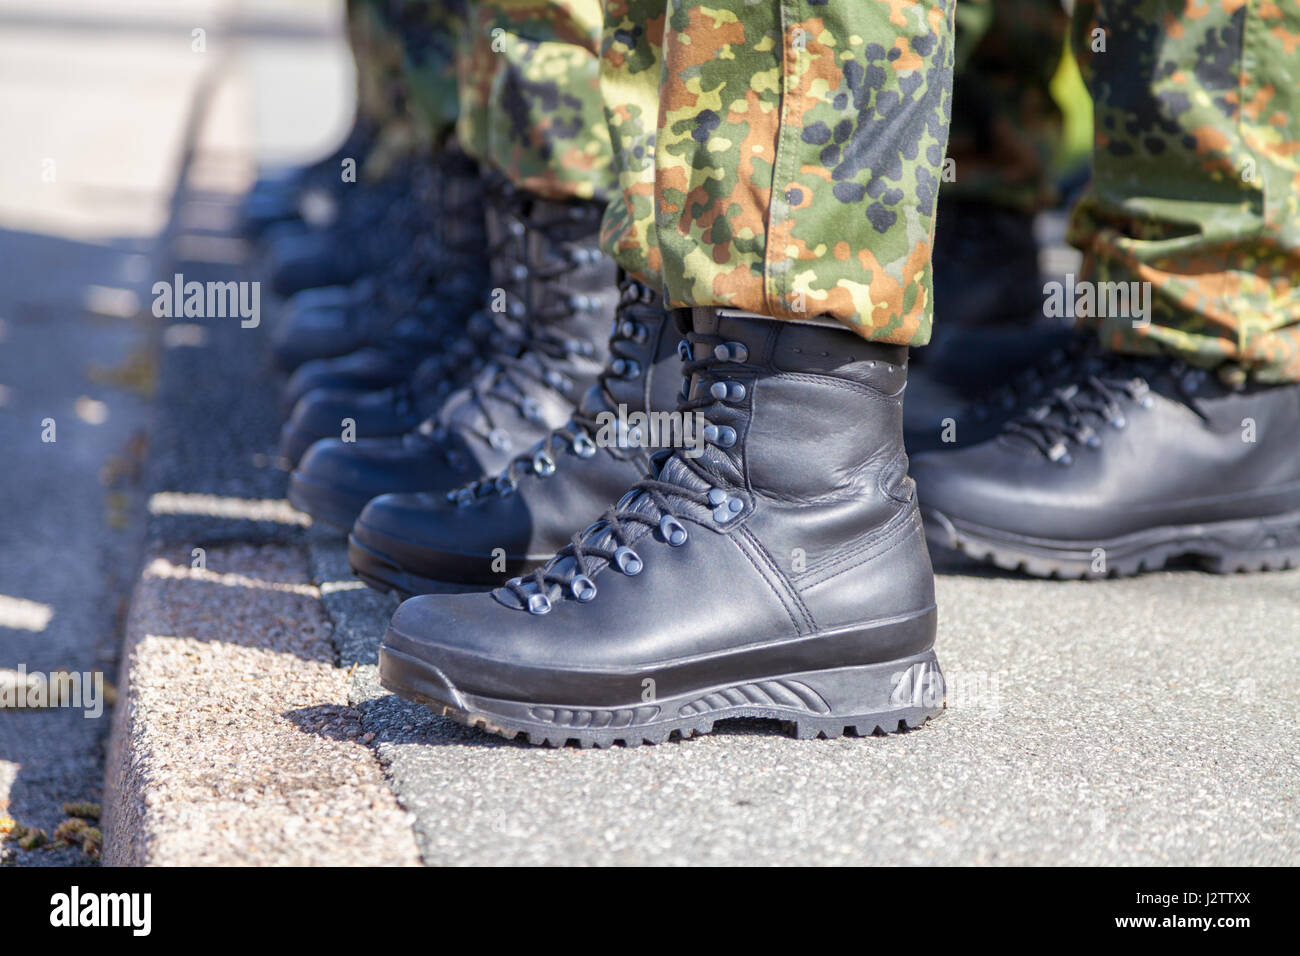 Bundeswehr Schuhe in einer Linie Stockfotografie - Alamy